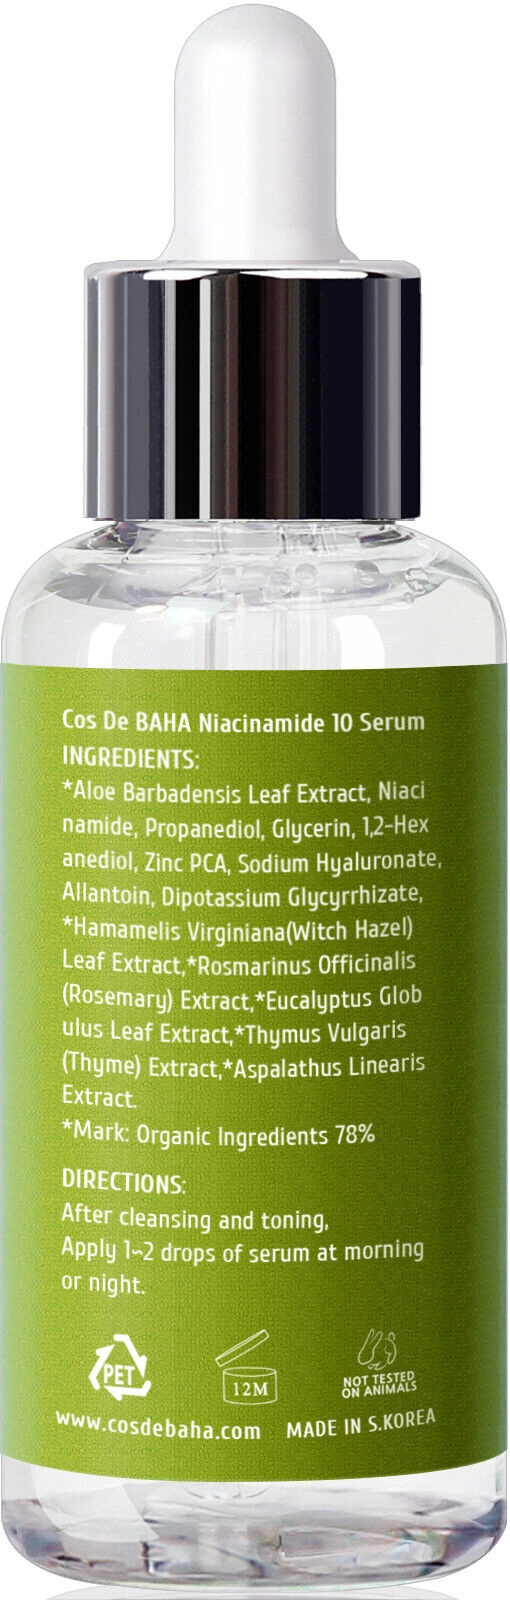 Сыворотка для жирной и проблемной кожи с ниацинамидом 10% и цинком 1% - Cos De Baha N Niacinamide 10 Serum with Zinc, 60 мл - фото N3